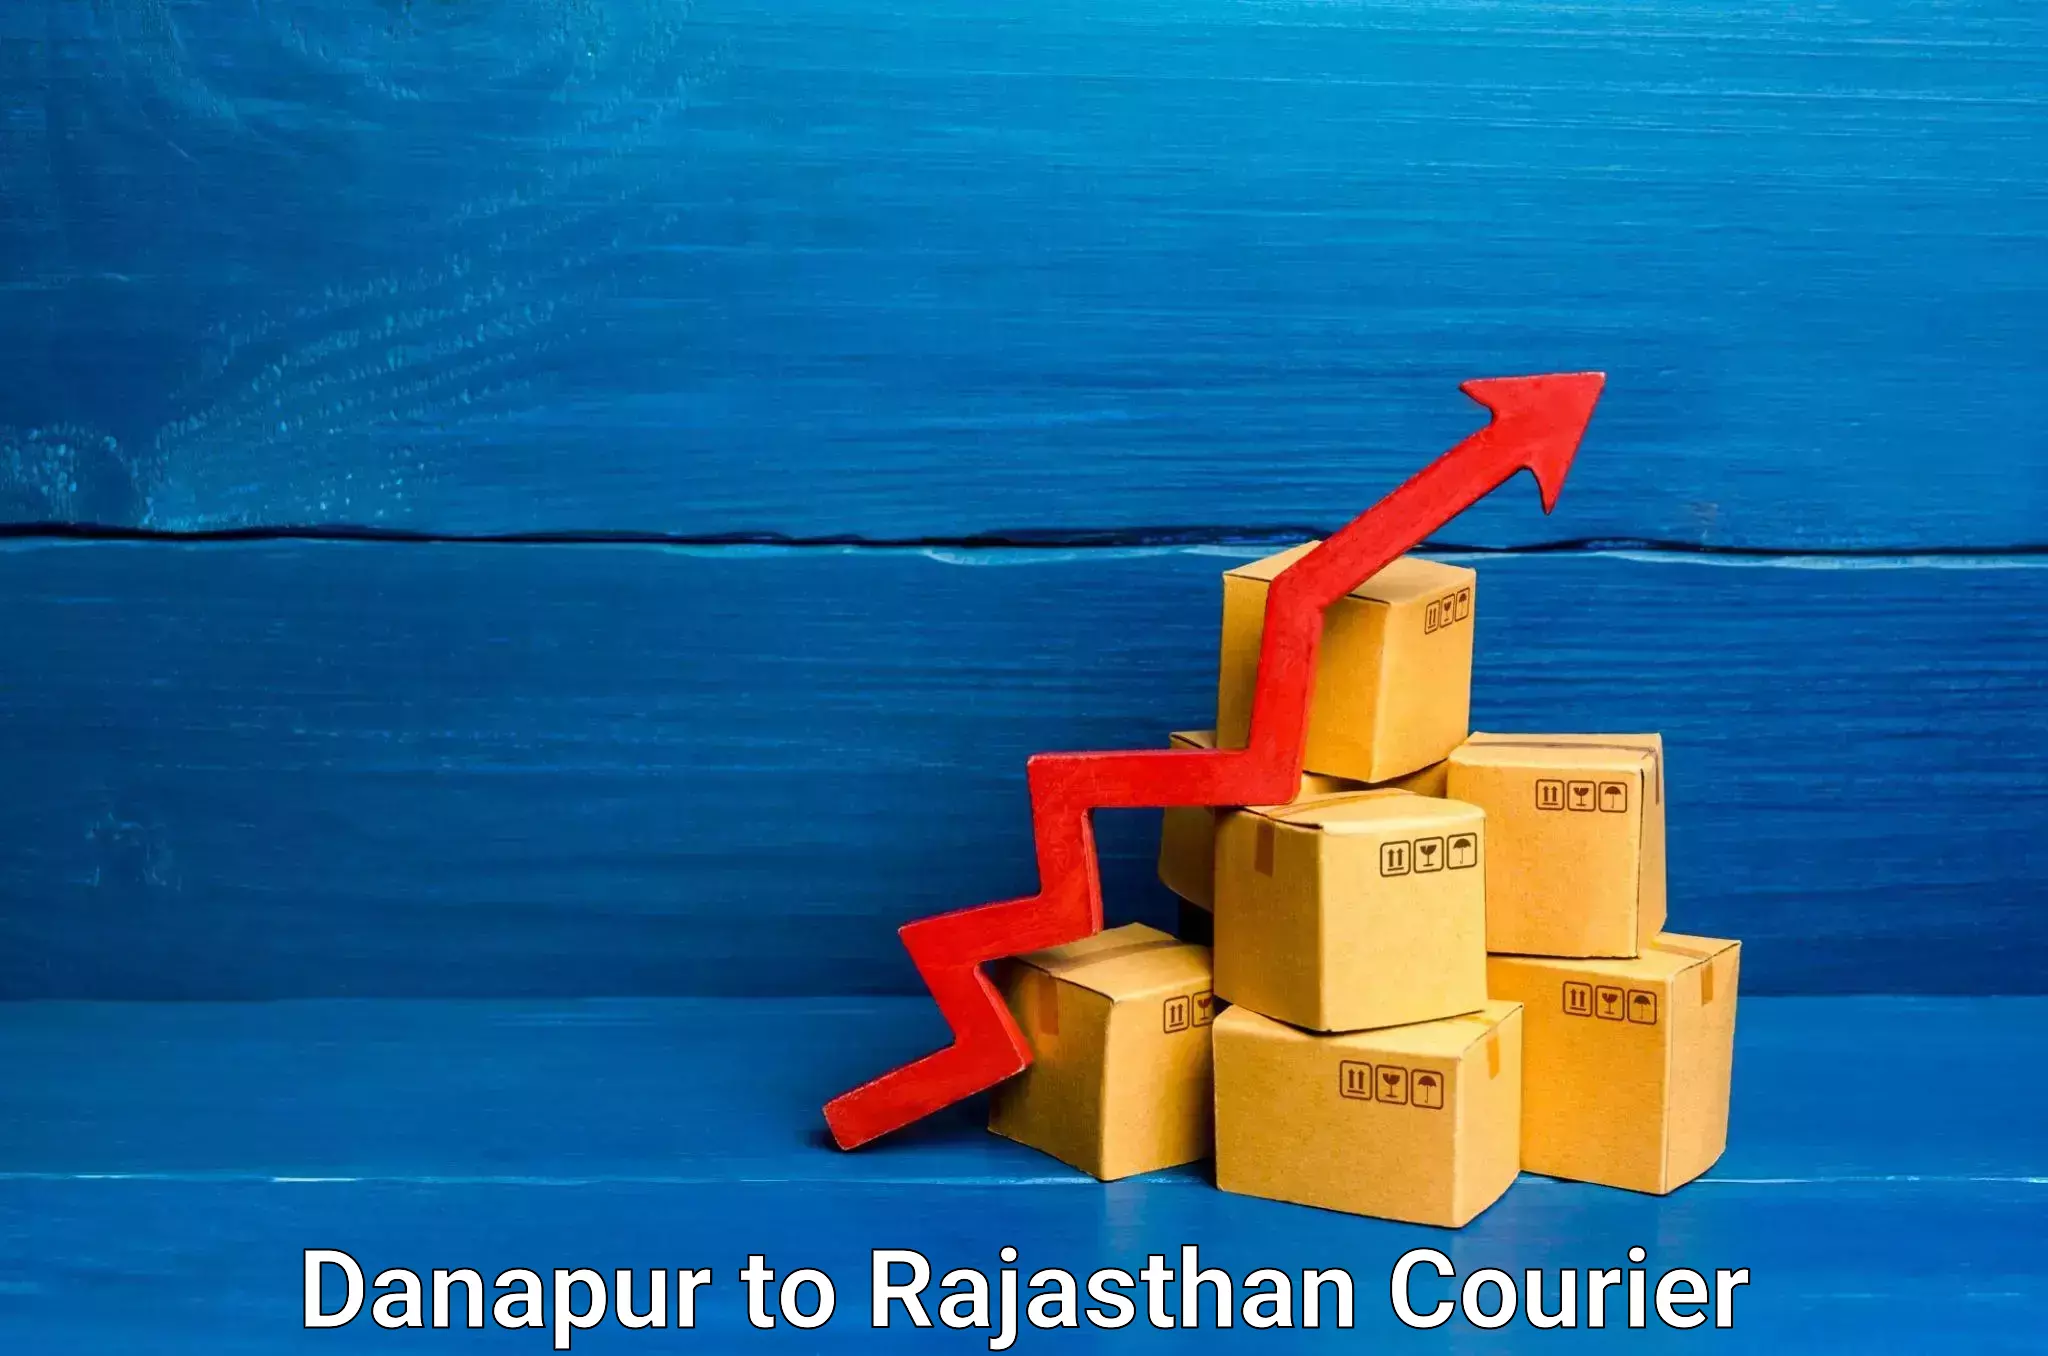 Furniture transport specialists Danapur to Sri Vijaynagar